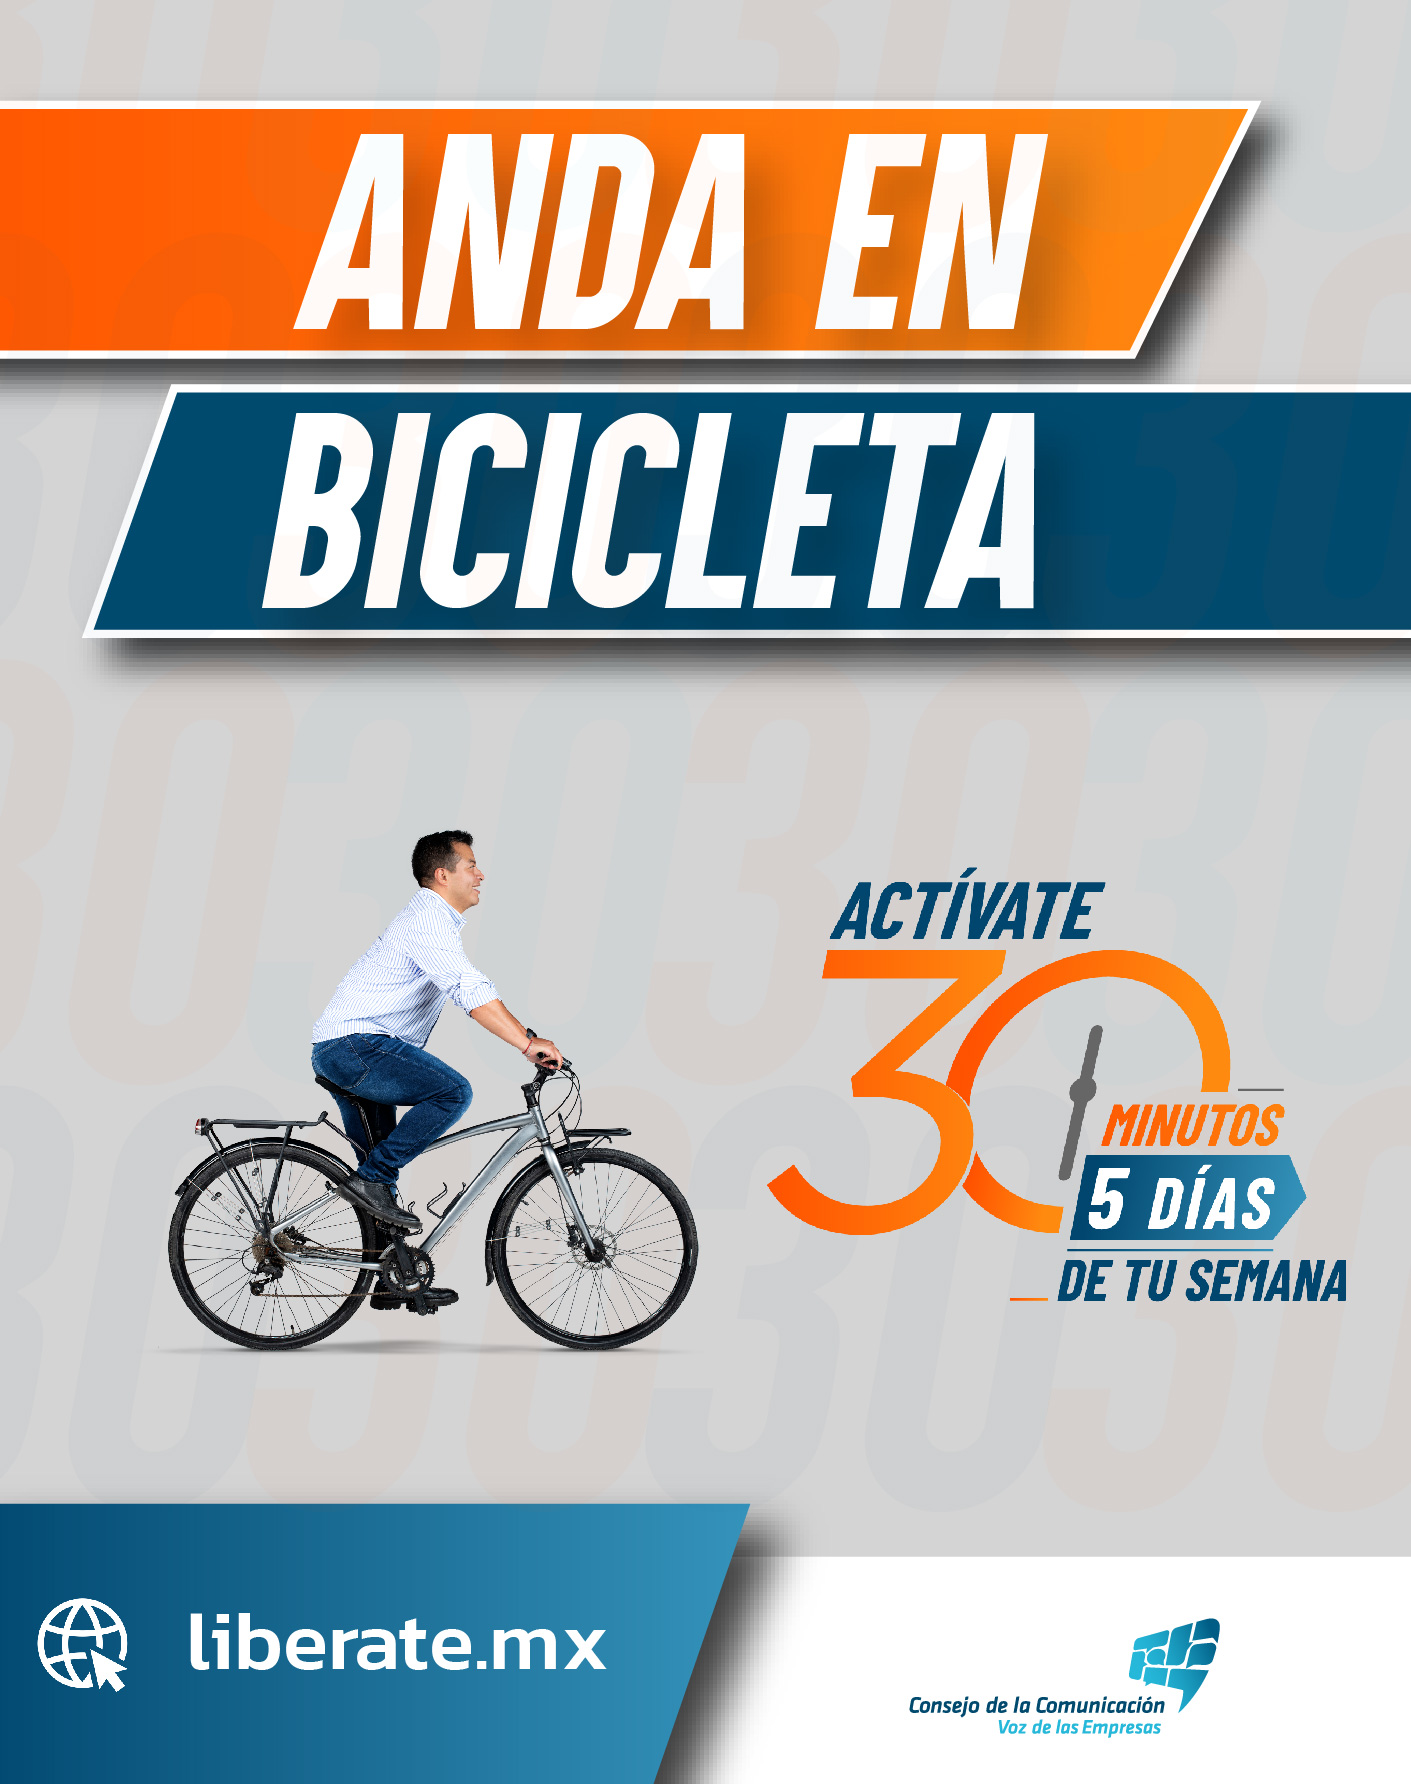 Anda en bicicleta. Libérate es una campaña del Consejo de la Comunicación, que consiste en hacer actividad física al menos 30 minutos días 5 días de la semana